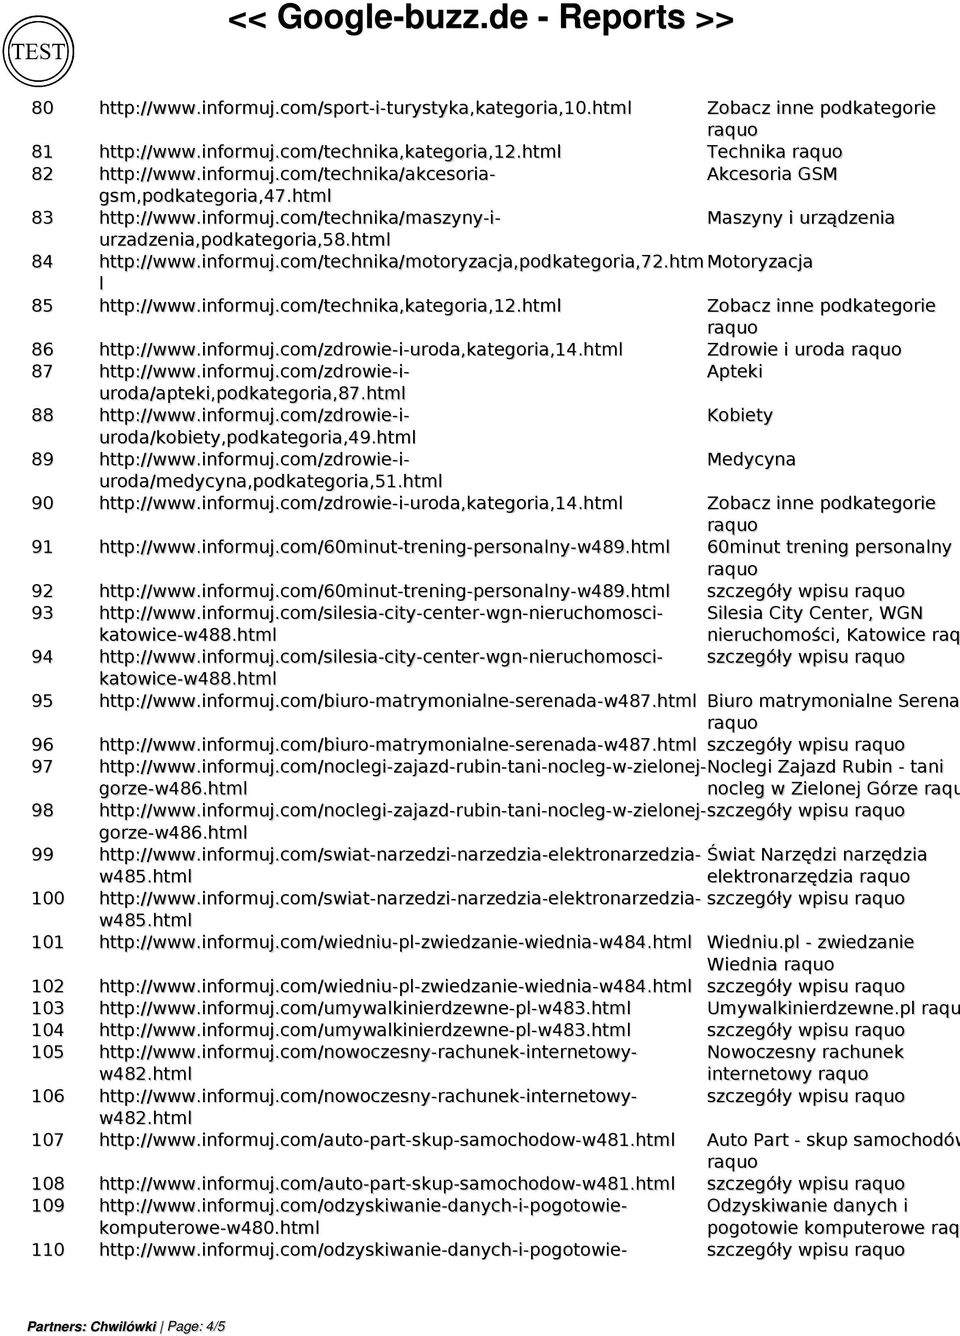 htm Motoryzacja l 85 http://www.informuj.com/technika,kategoria,12.html 86 http://www.informuj.com/zdrowie-i-uroda,kategoria,14.html Zdrowie i uroda 87 http://www.informuj.com/zdrowie-i- Apteki uroda/apteki,podkategoria,87.